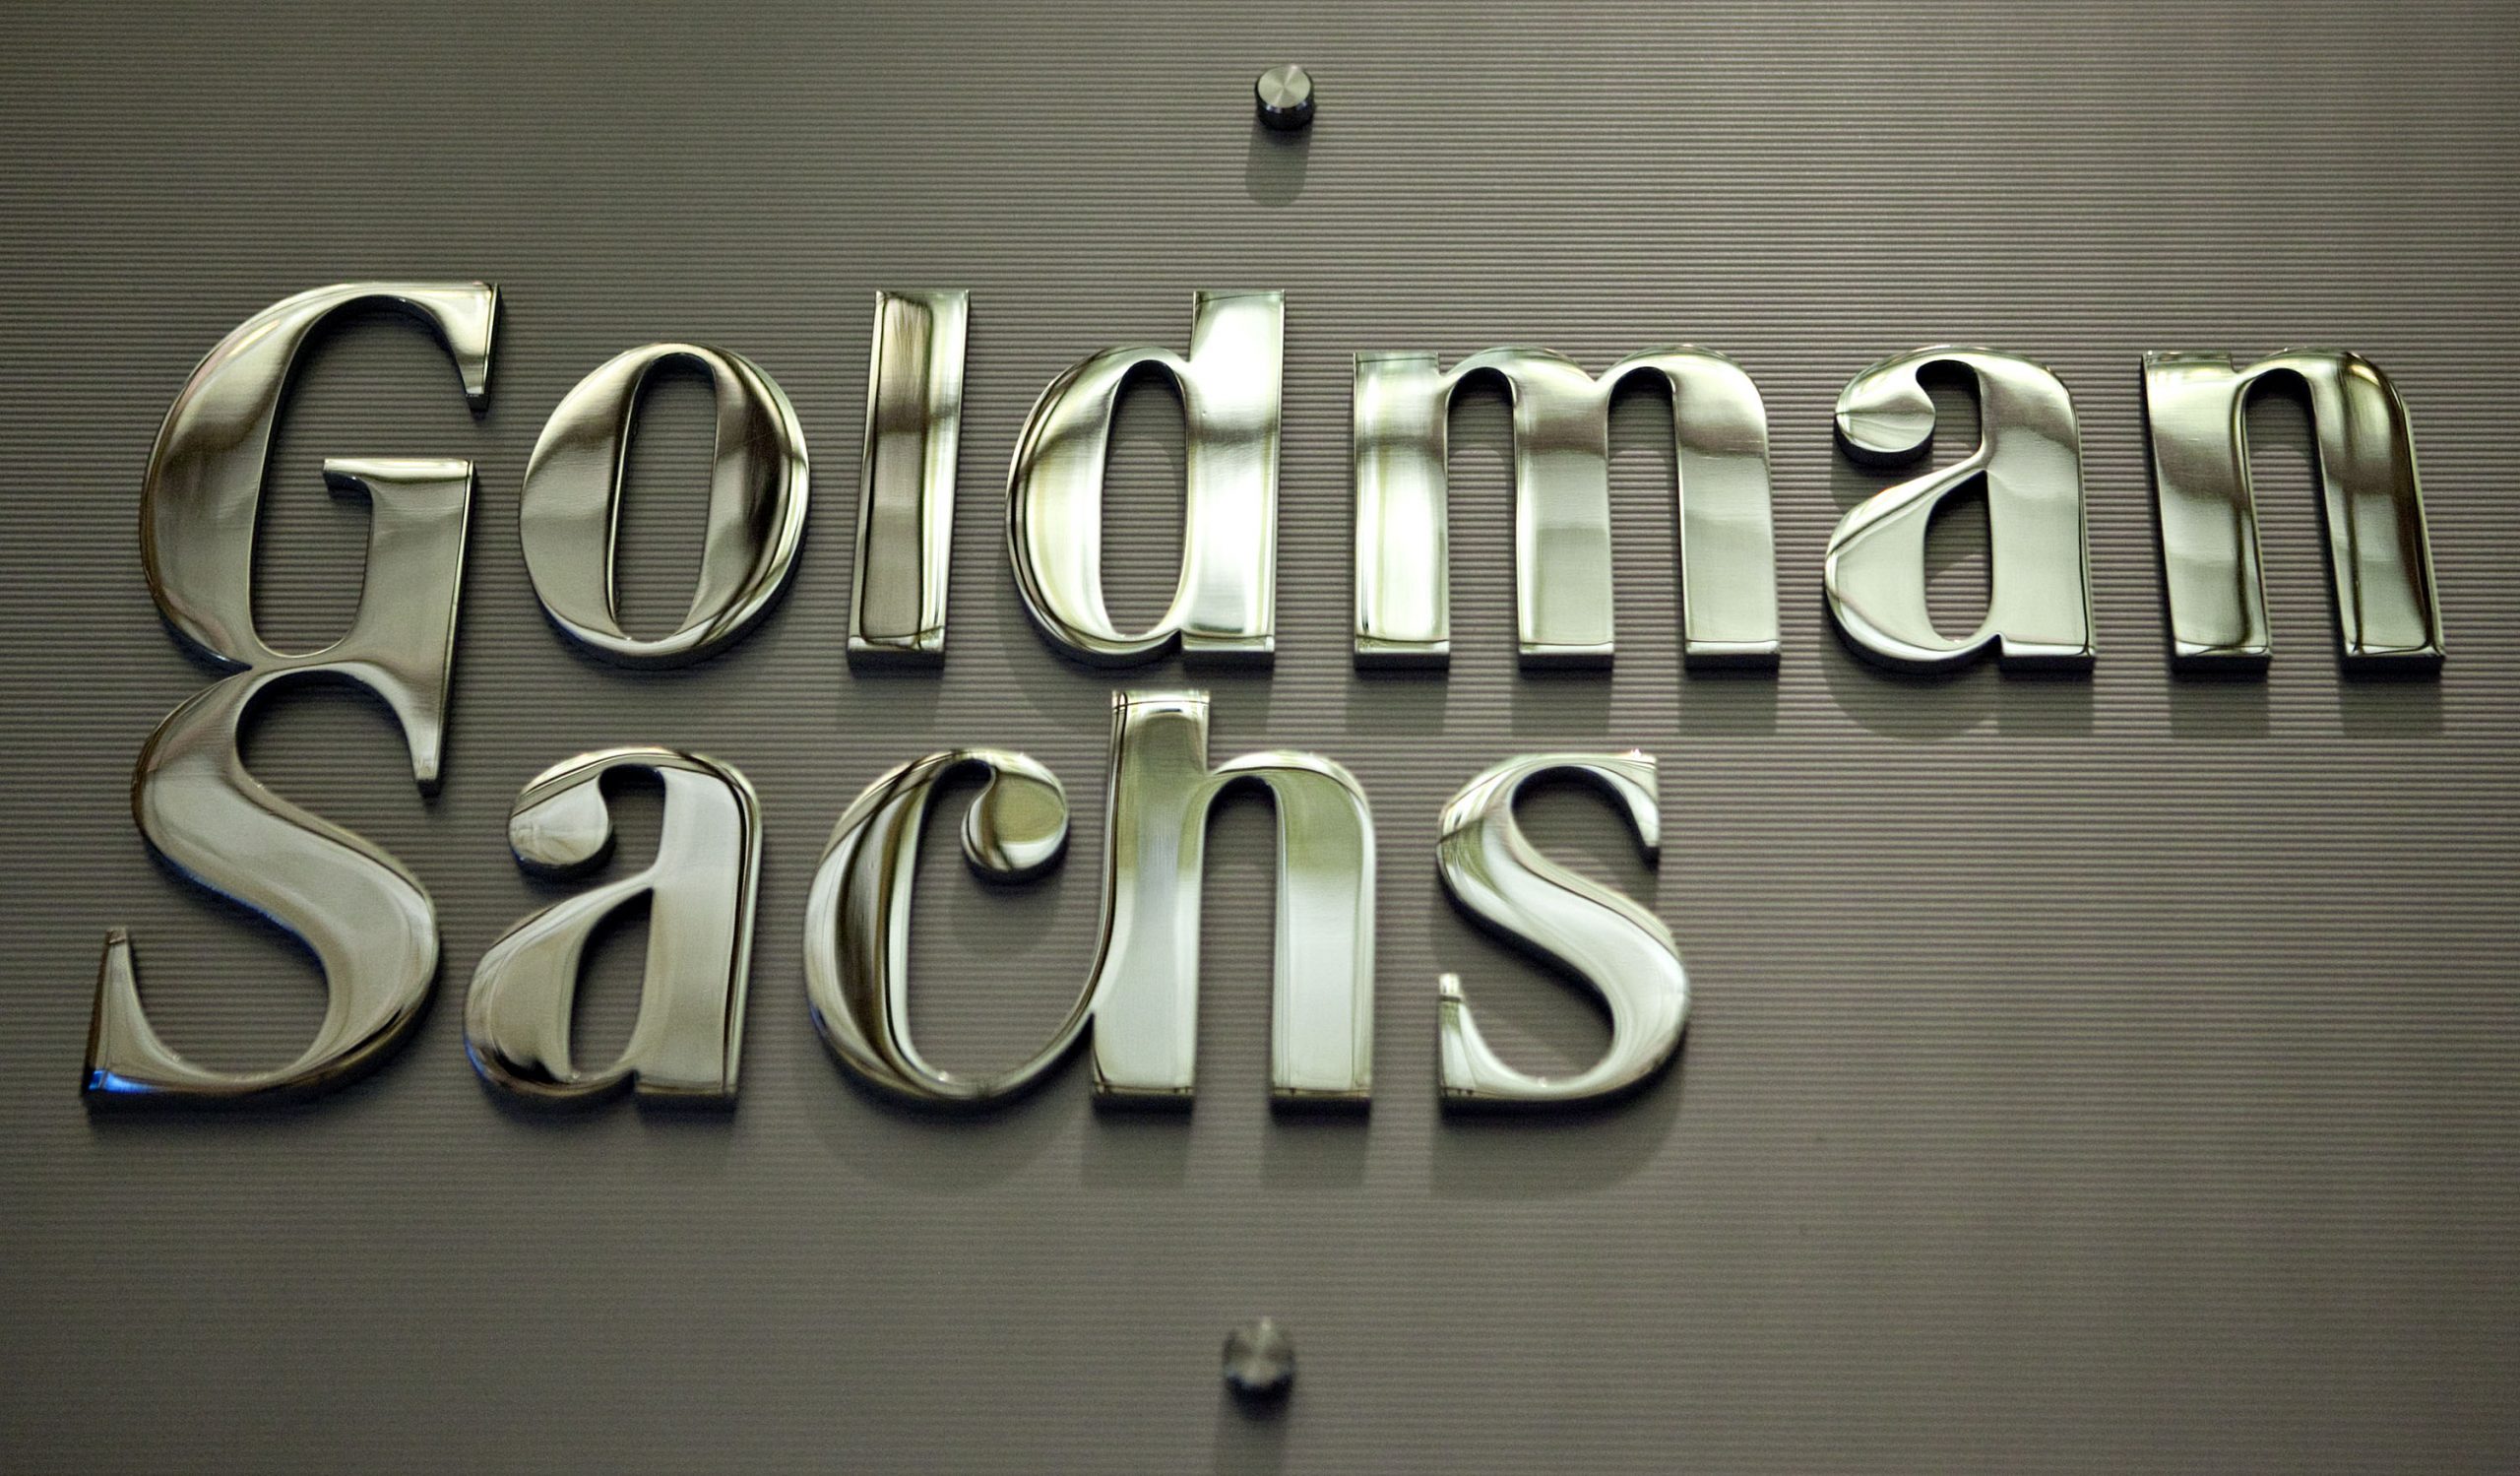 Goldman Sachs e Commerzbank sempre più verso le Criptovalute